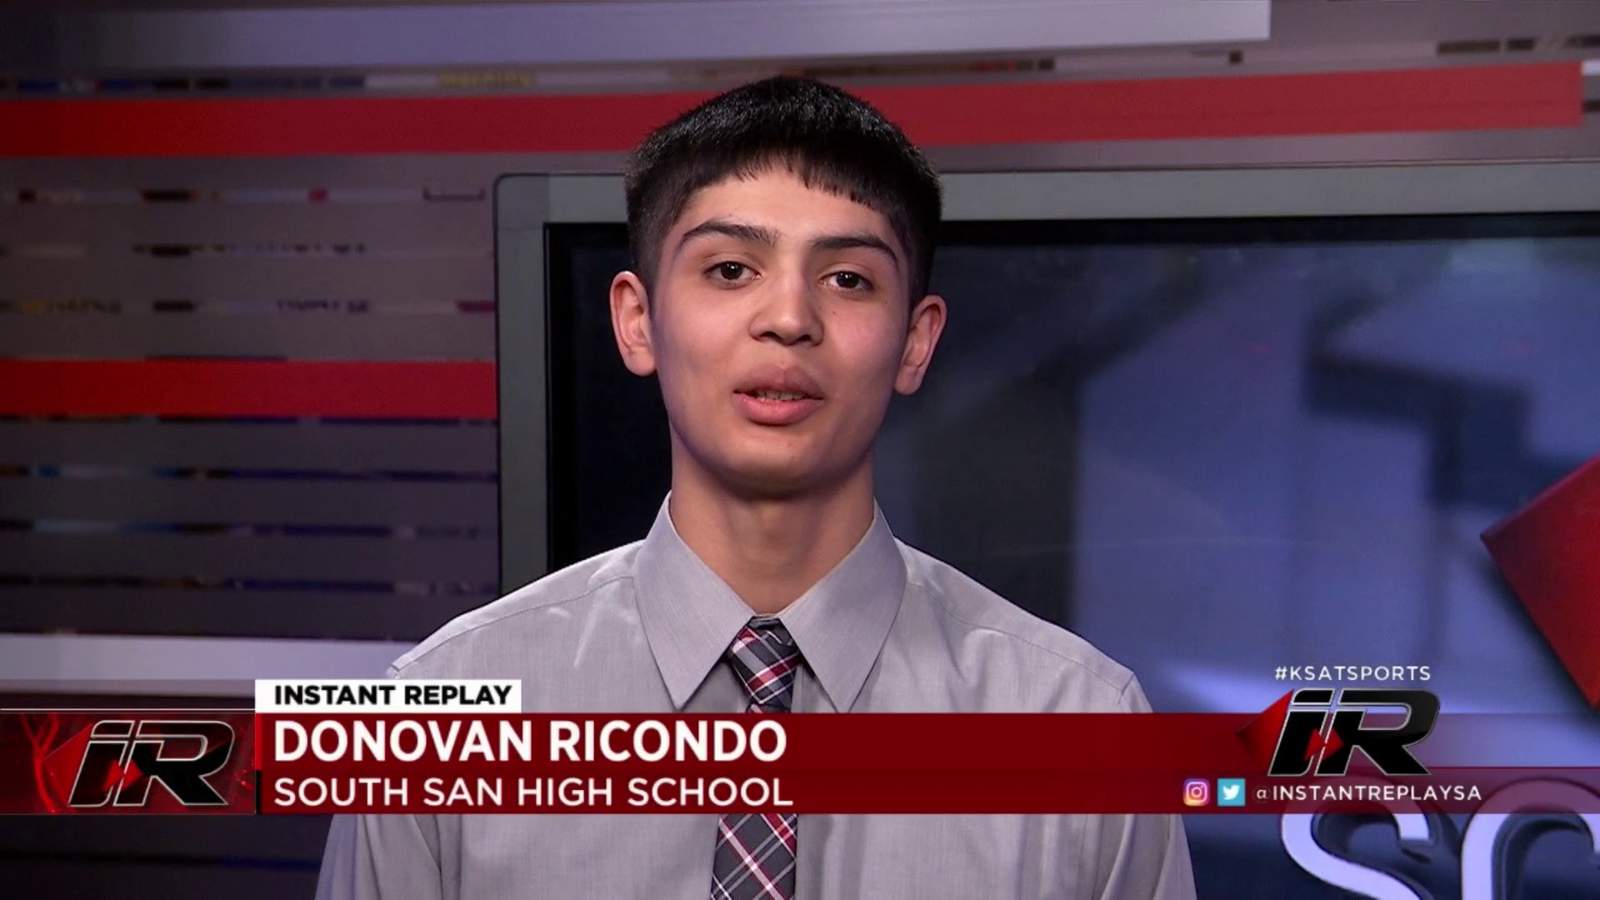 Scholar Athlete: Donovan Ricondo, South San High School